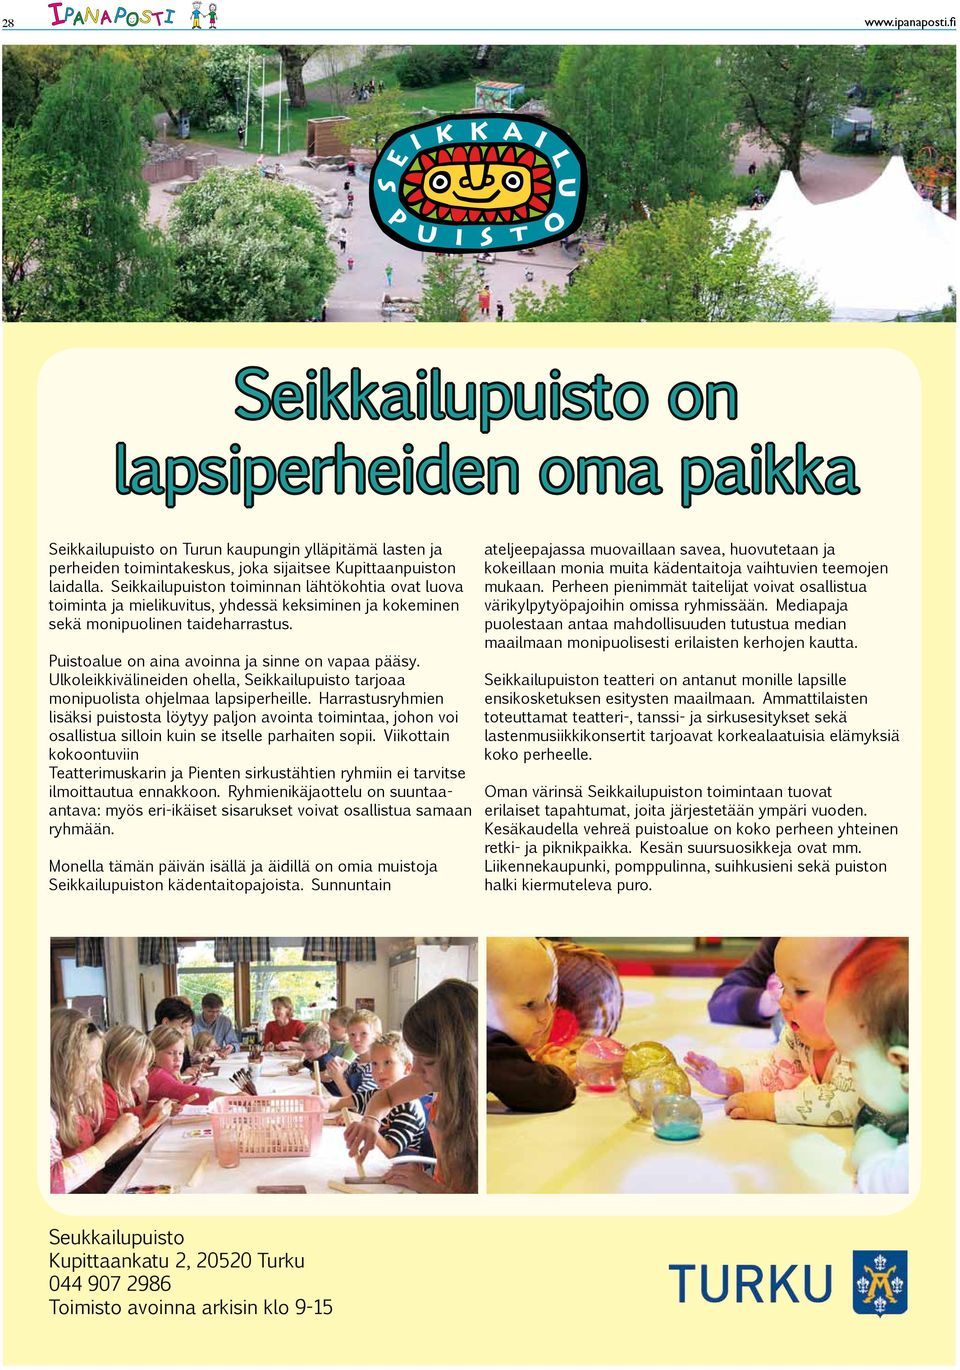 Ulkoleikkivälineiden ohella, Seikkailupuisto tarjoaa monipuolista ohjelmaa lapsiperheille.